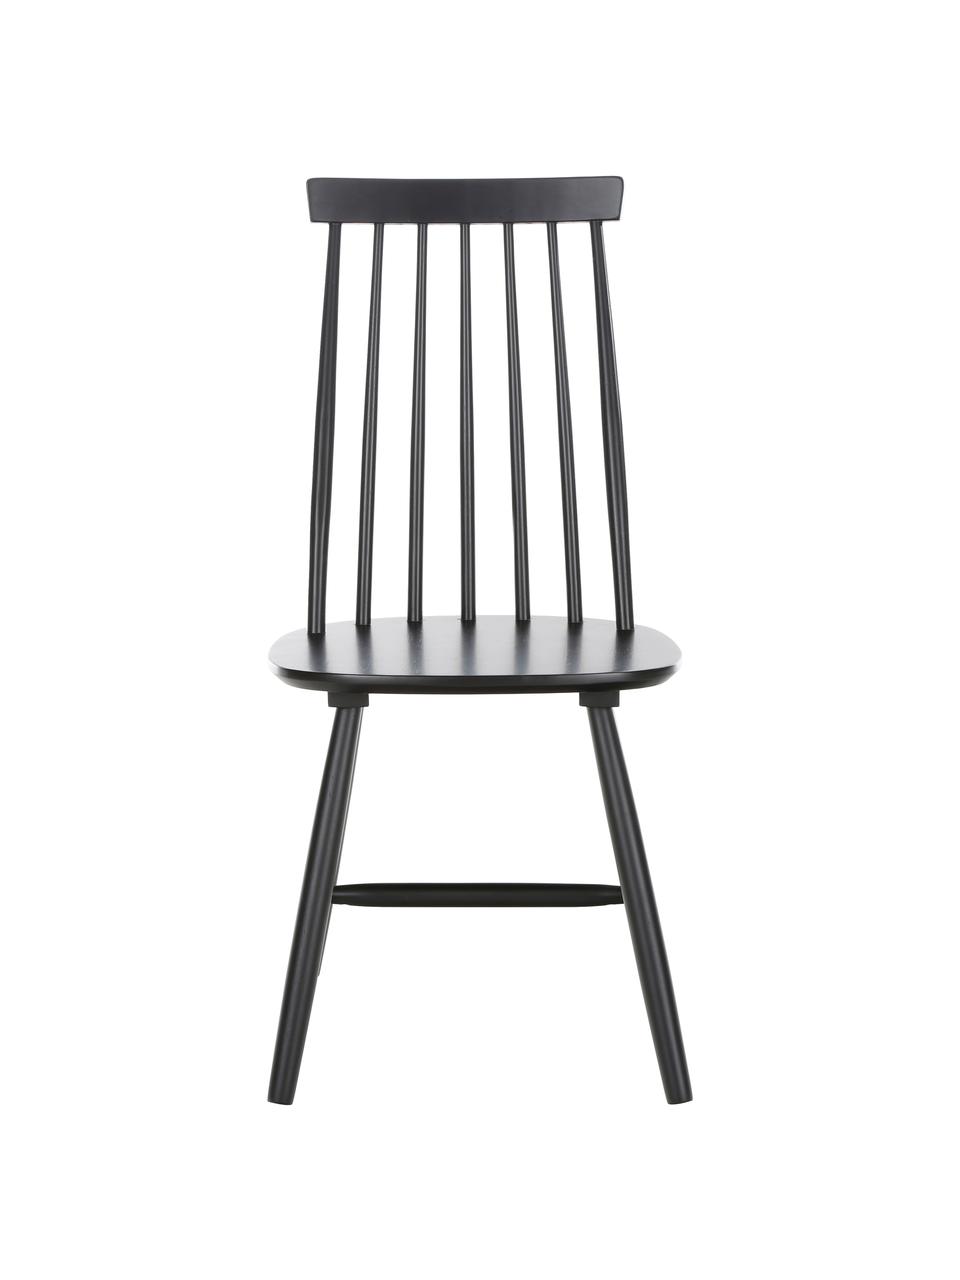 Windsor-Holzstühle Milas in Schwarz, 2 Stück, Kautschuckholz, lackiert, Schwarz, B 52 x T 45 cm